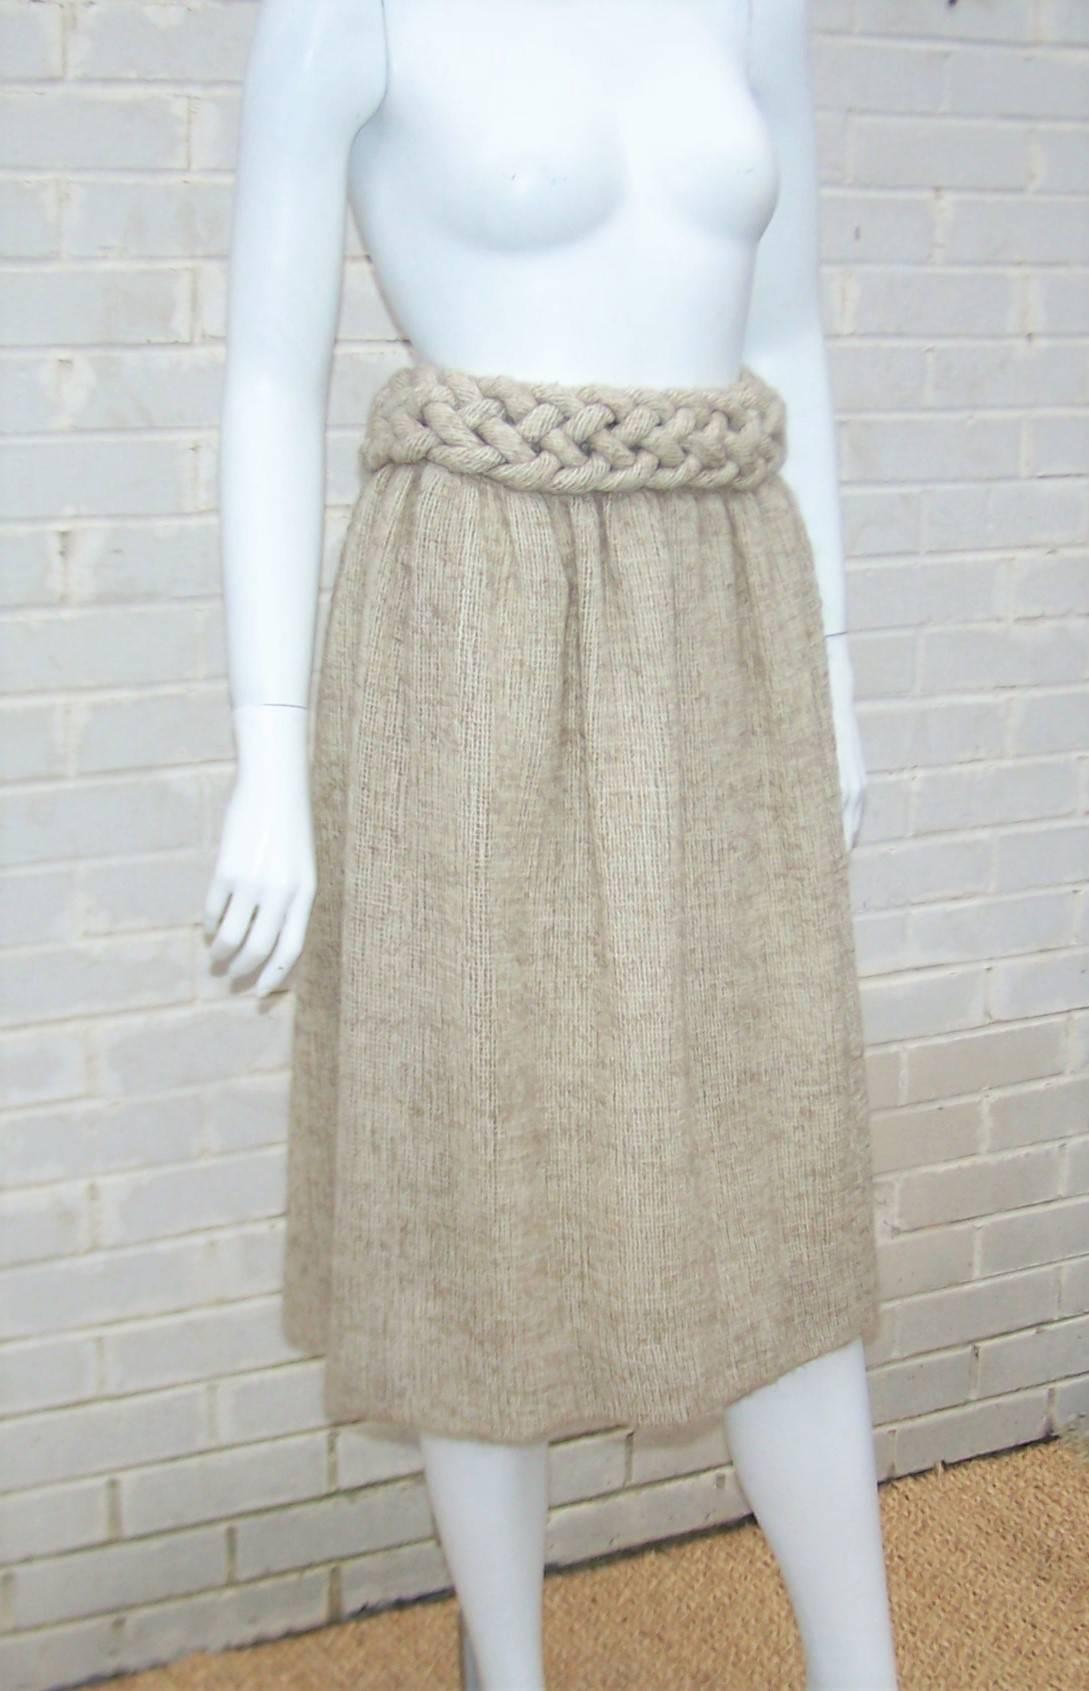 sackcloth skirt